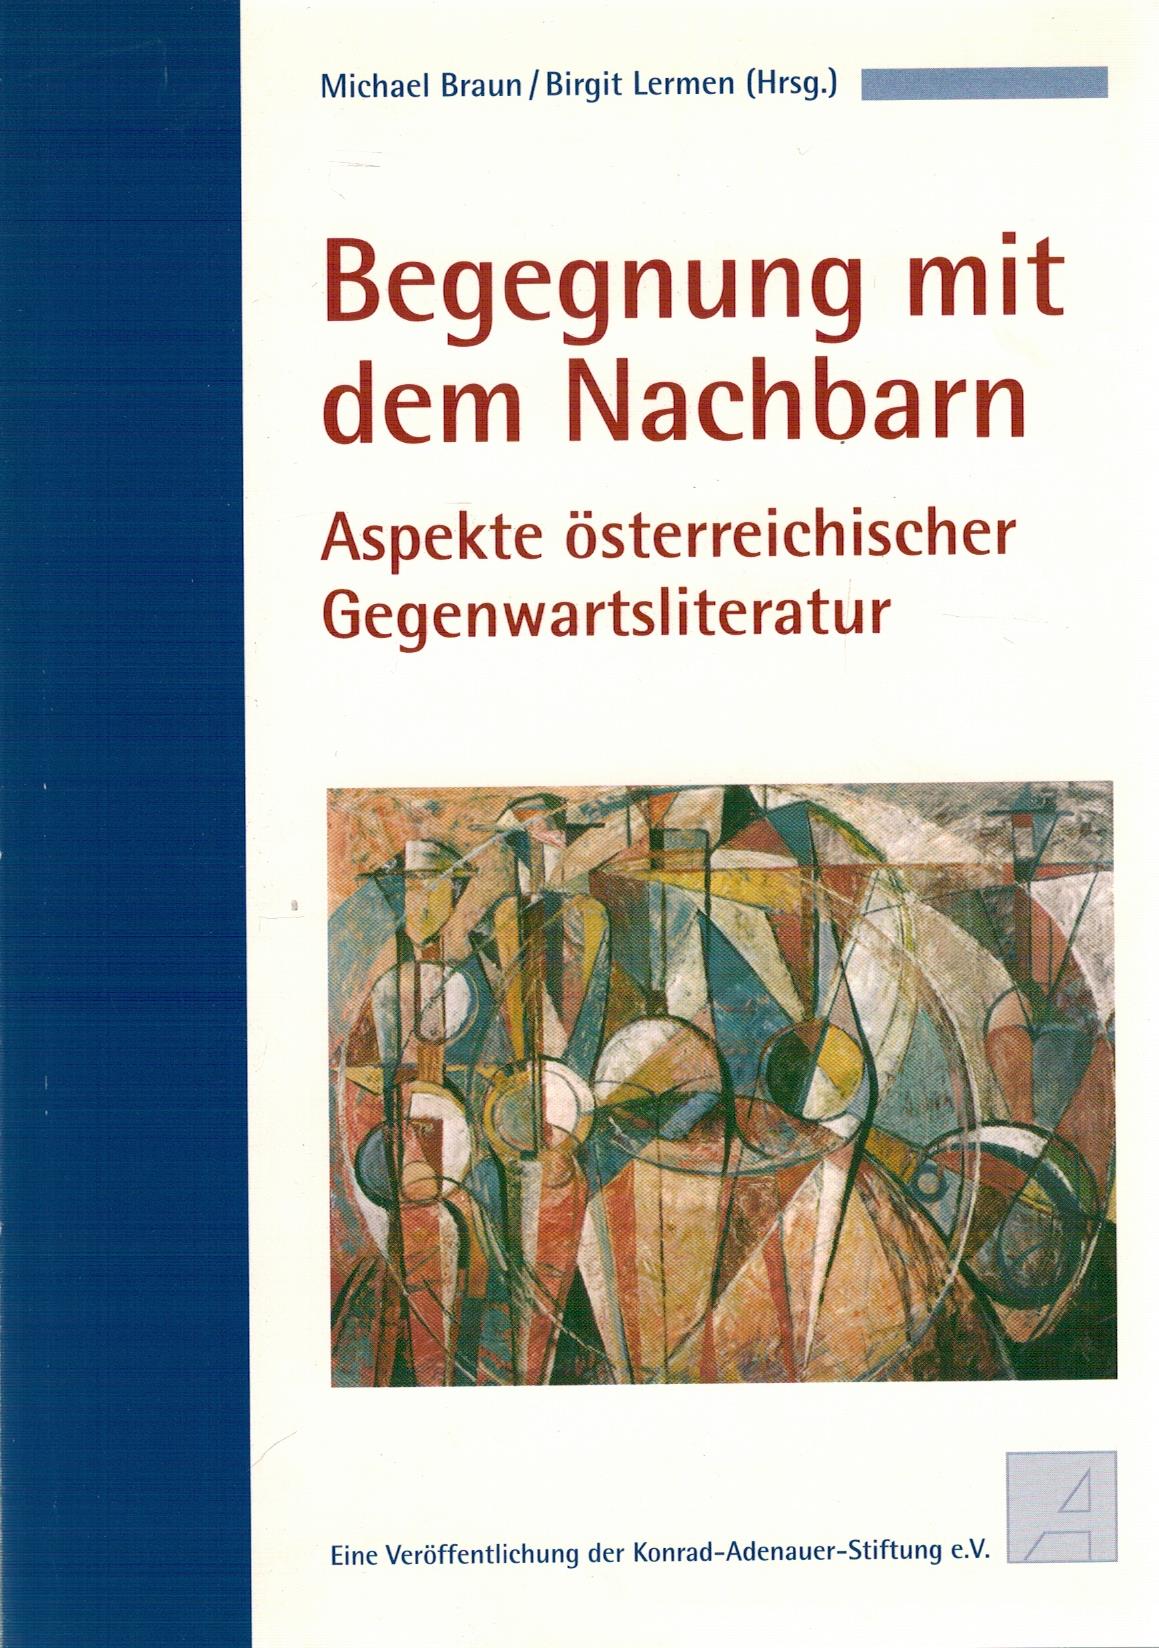 Begegnung mit dem Nachbarn - Aspekte Ã sterreichischer Gegenwartsliteratur - Braun, Michael; Lermen, Birgit (Hrsg.)